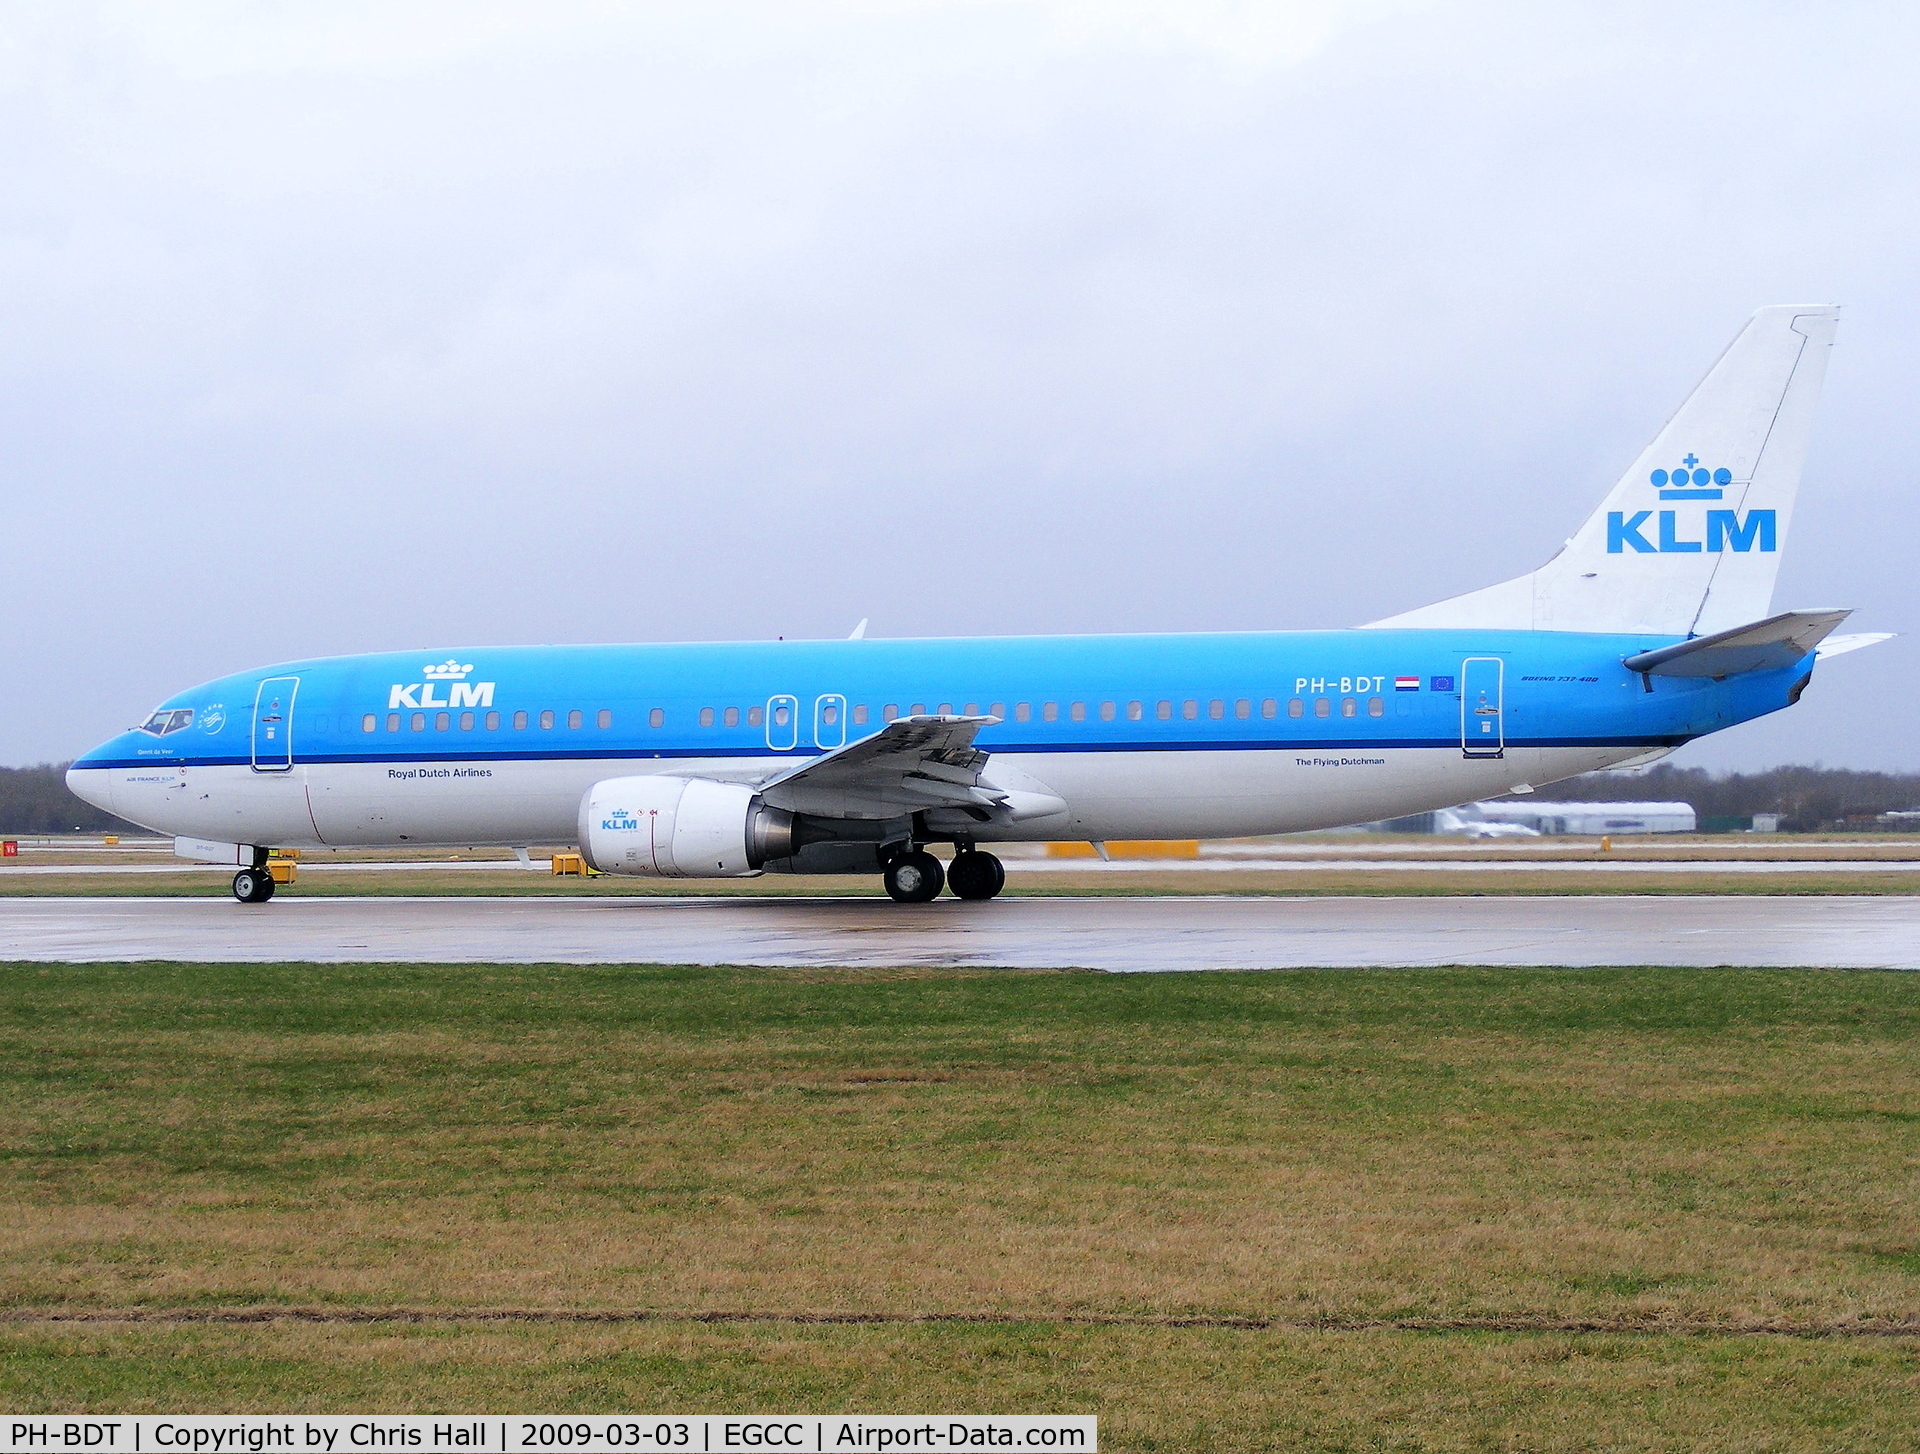 PH-BDT, 1989 Boeing 737-406 C/N 24530, KLM